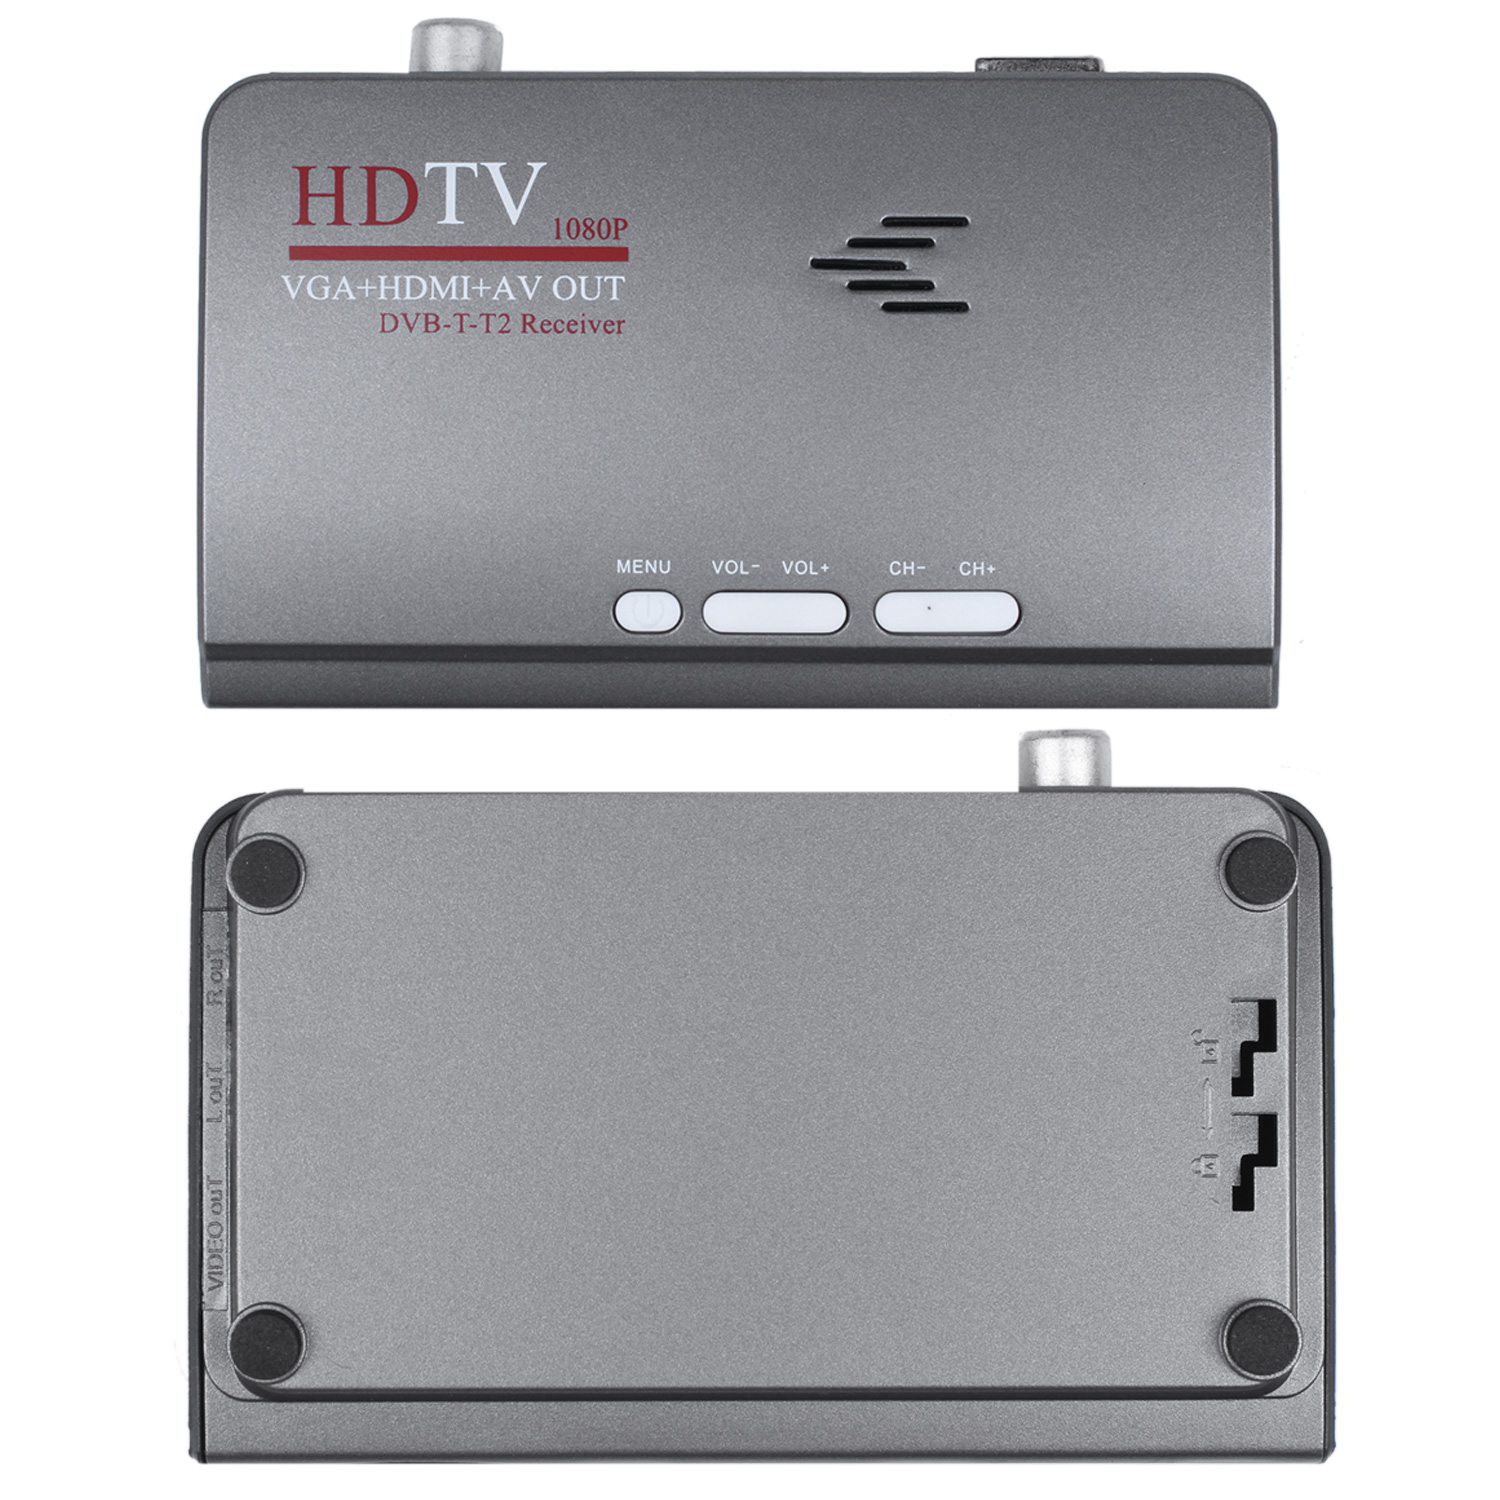 Đầu Cắm Chuyển Đổi Tv Thường Thành Smart Tv 1080p Hd Dvb-T2 / T